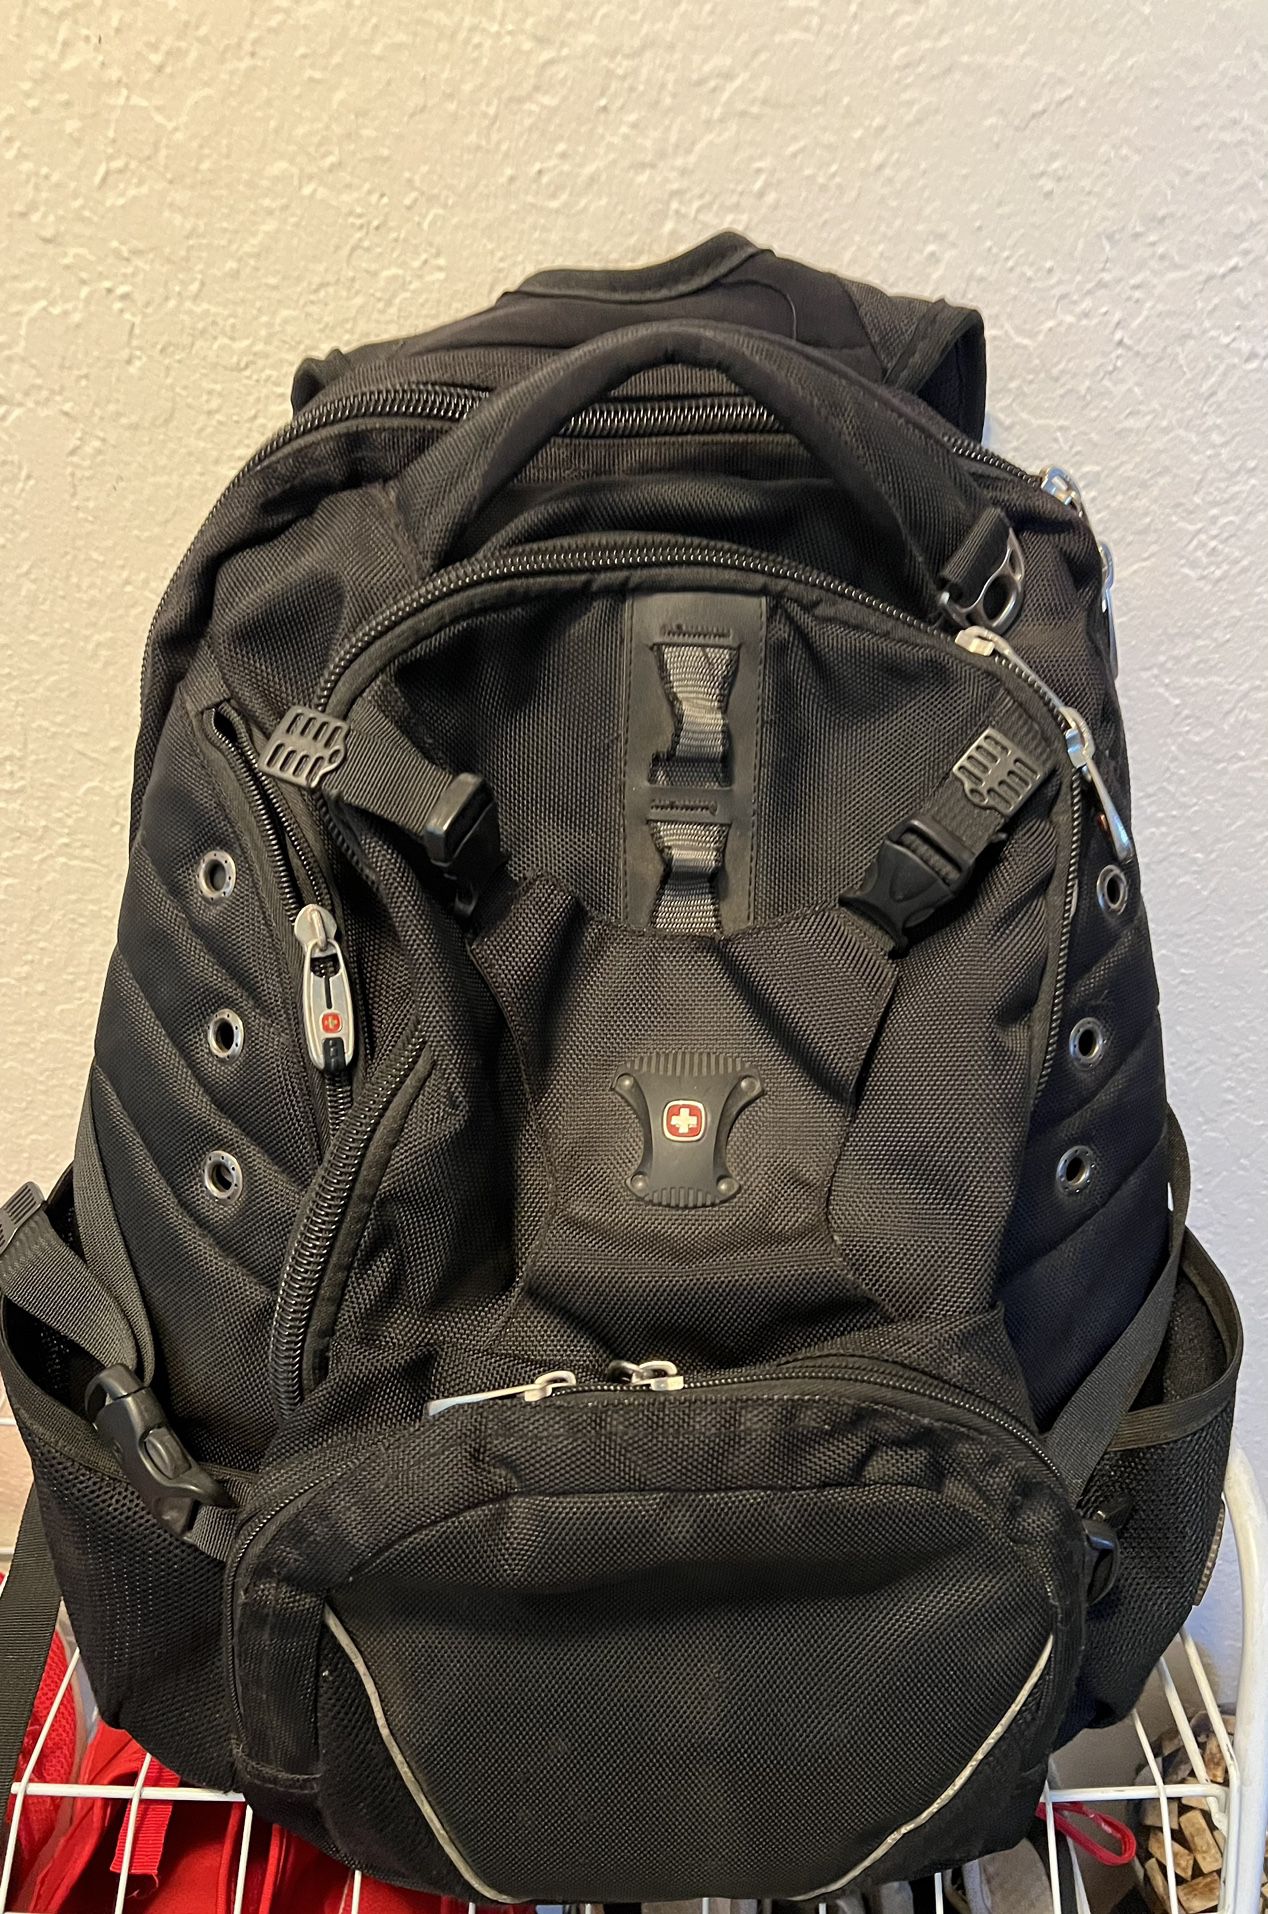 Swiss Brand Backpack 